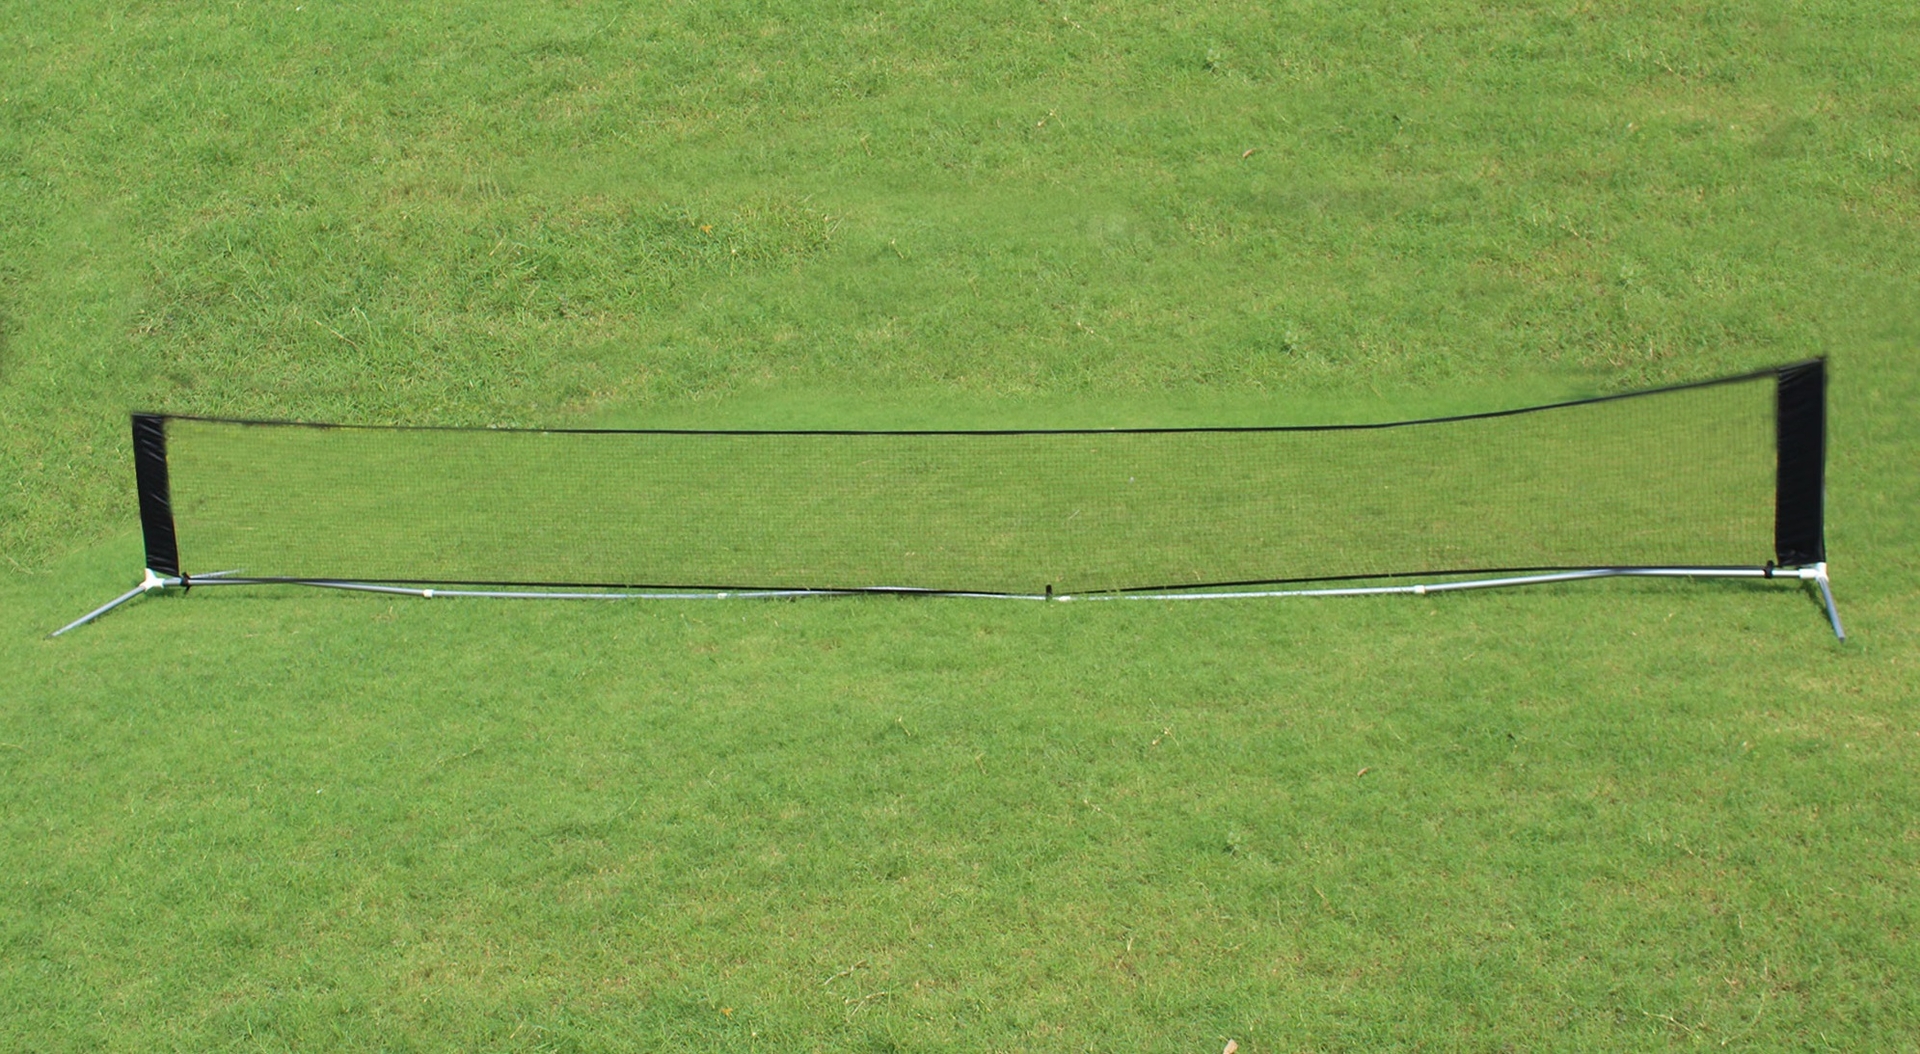 Voetvolley net 6 meter